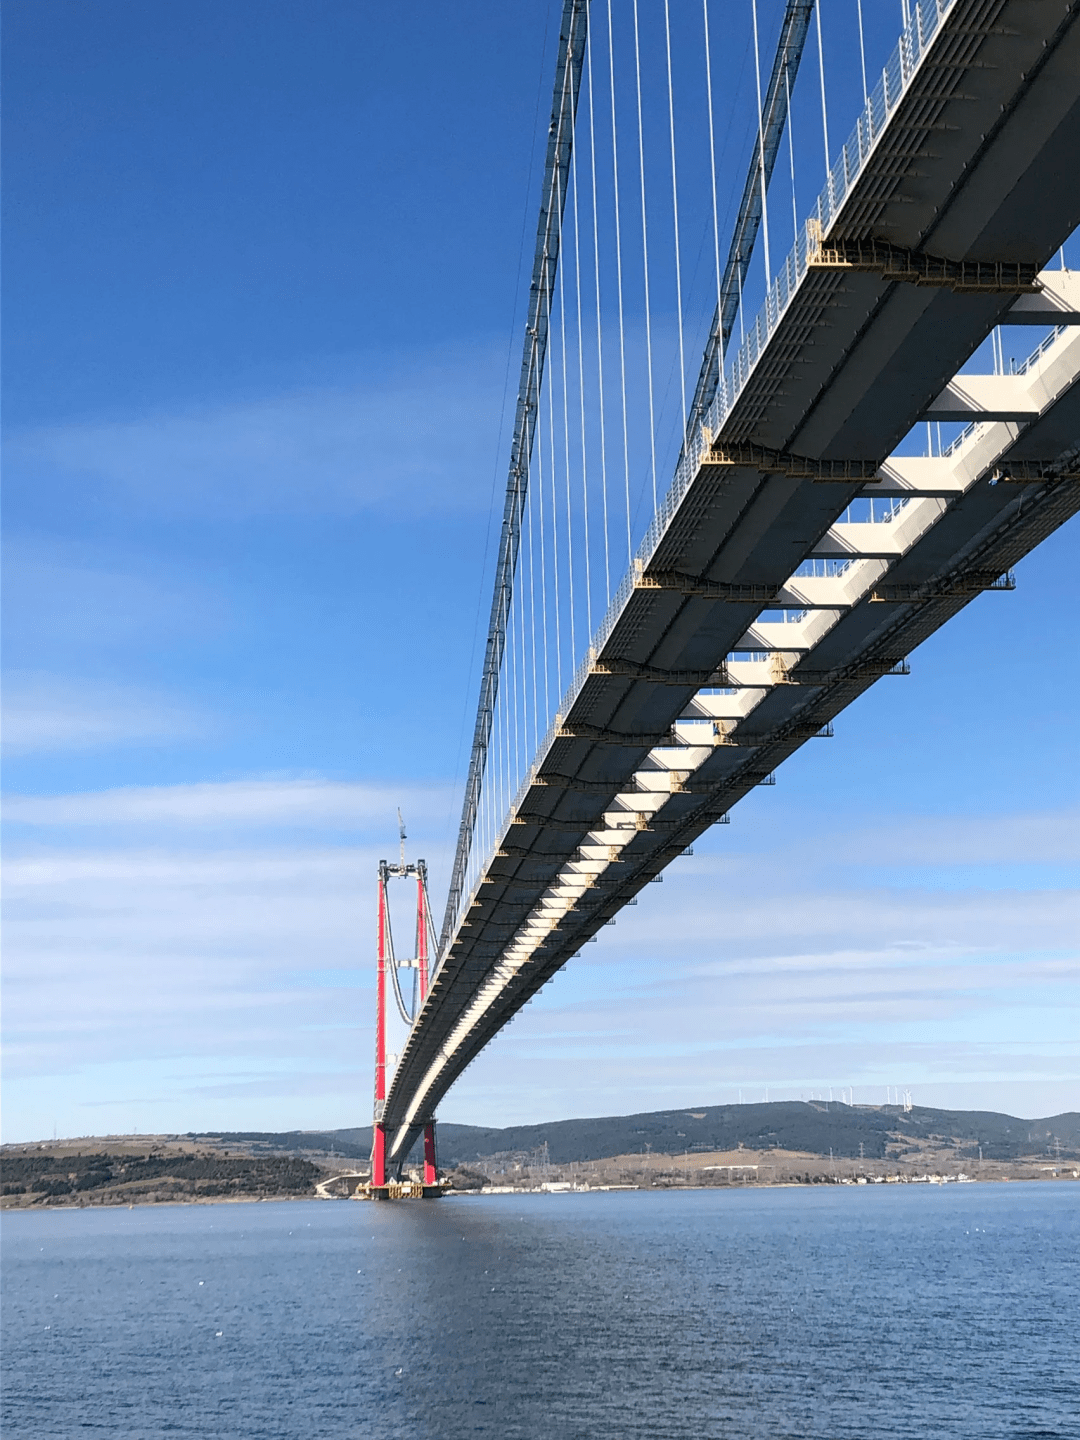 土耳其欧亚大陆桥简介图片